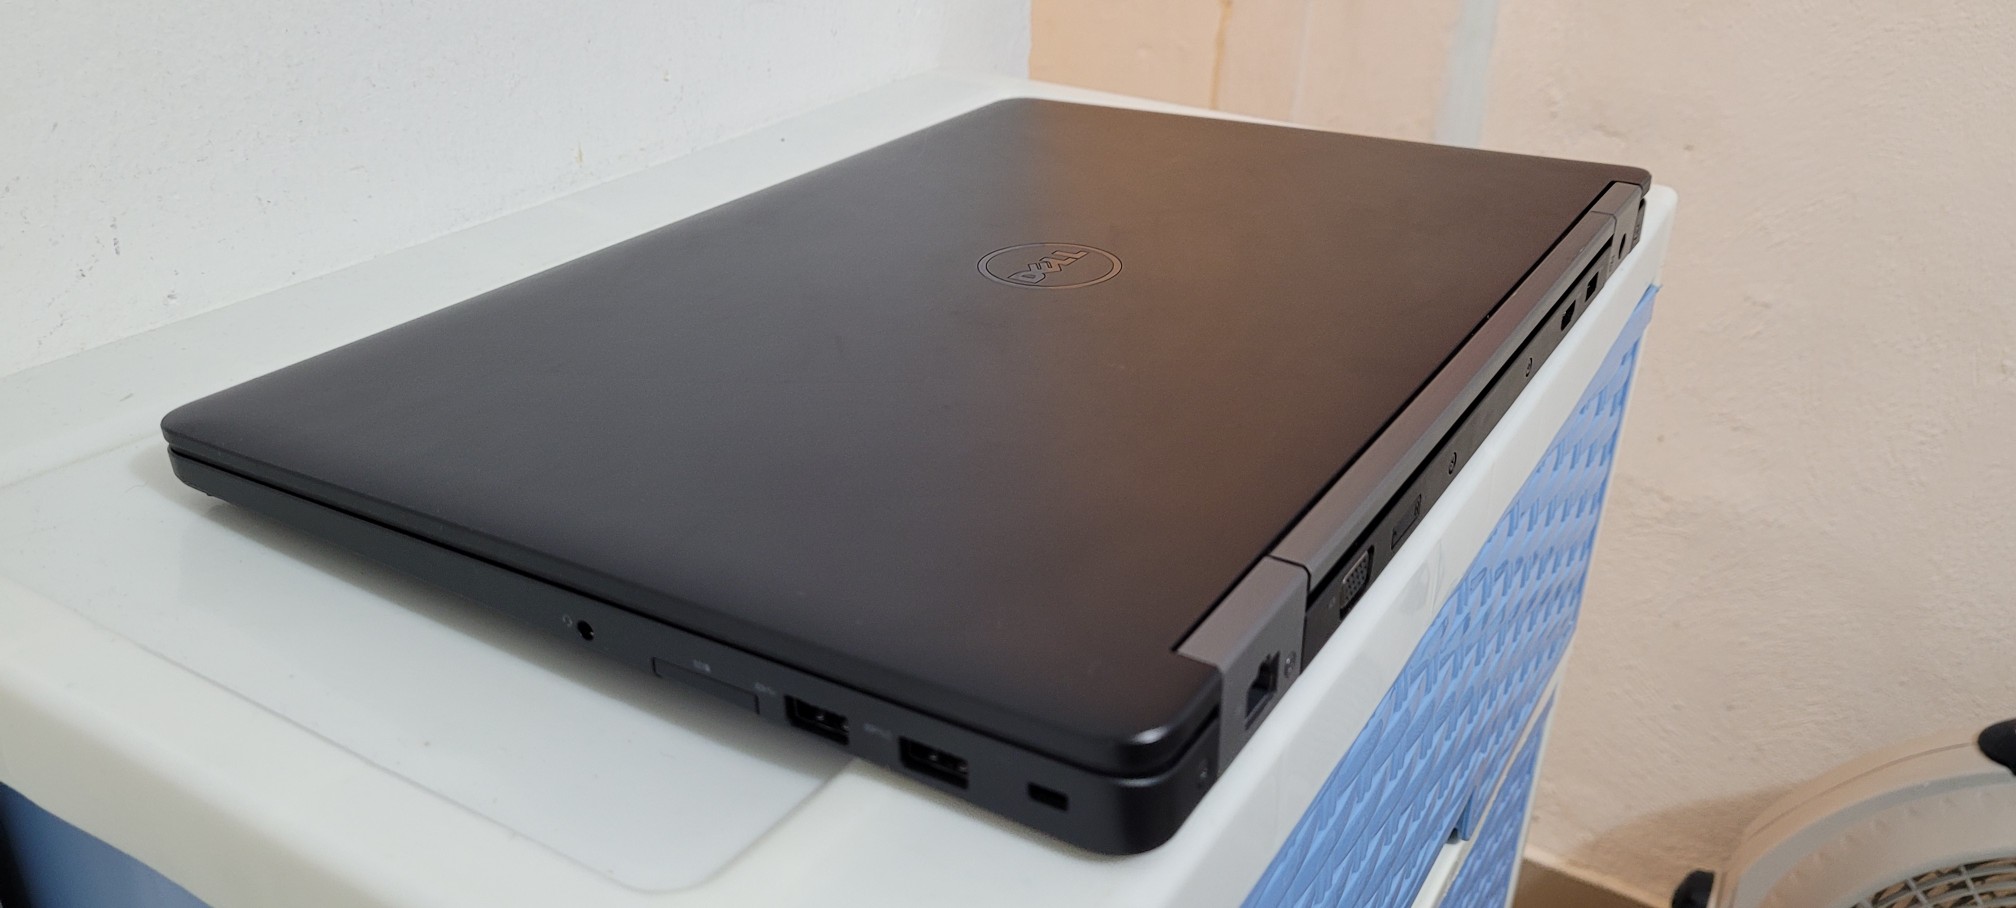 computadoras y laptops - Dell 5570 17 Pulg Core i7 6ta Ram 16gb Disco SSD 512GB Doble Video Grafico 2